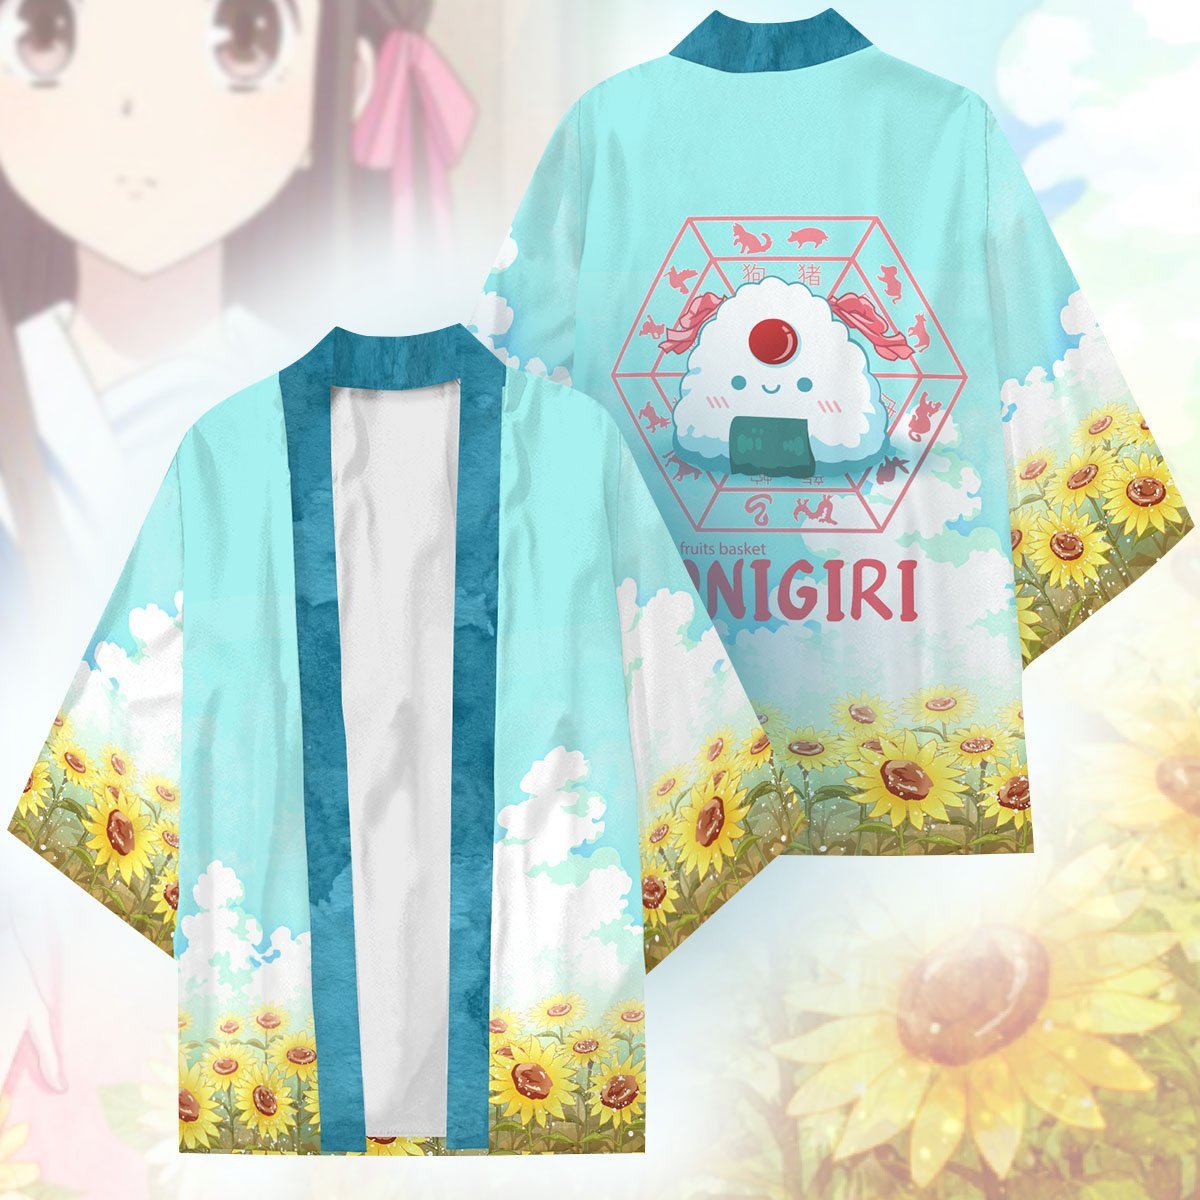 tohru the onigiri kimono 871535 - Otaku Treat